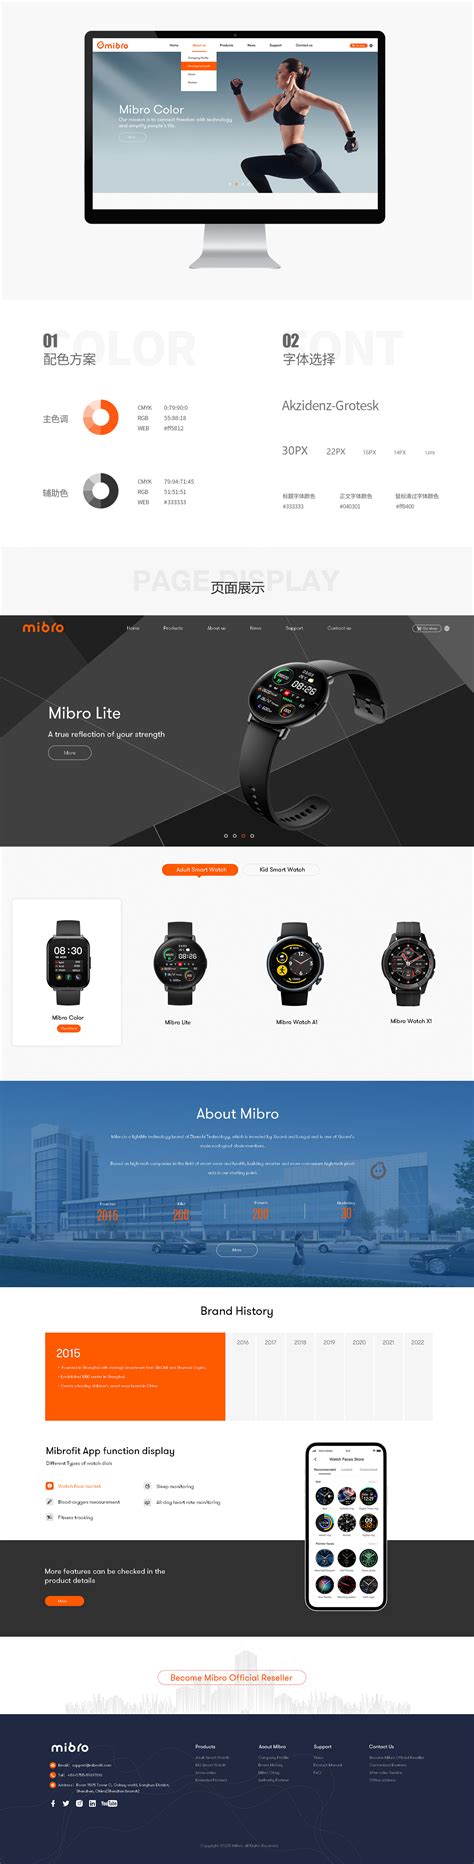 西玛设计公司网站建设2012版|深圳, 设计公司, 室内设计, 简洁大气